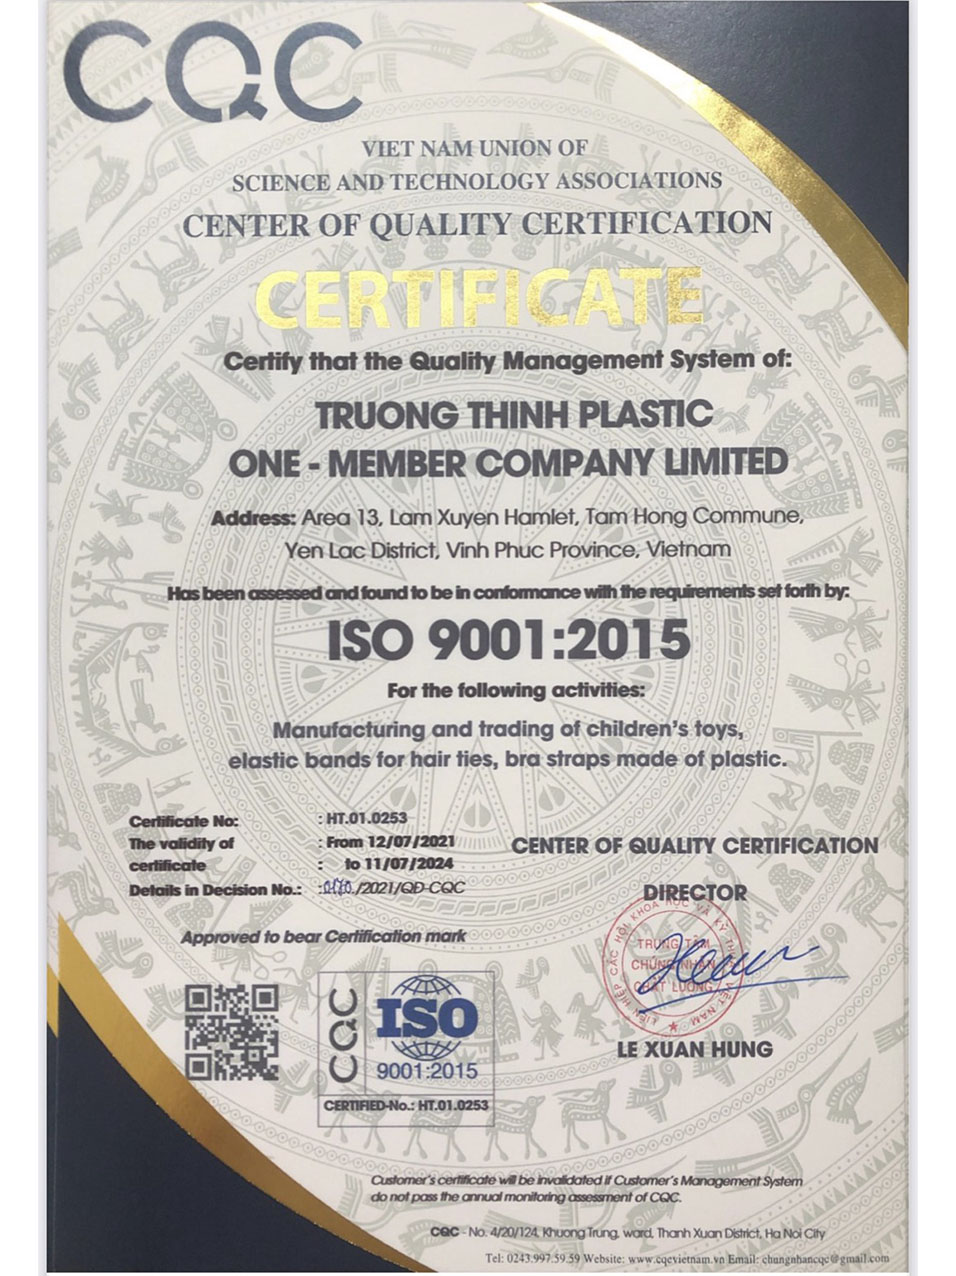 Trường Thịnh Plastic nhận giấy chứng nhận chất lượng